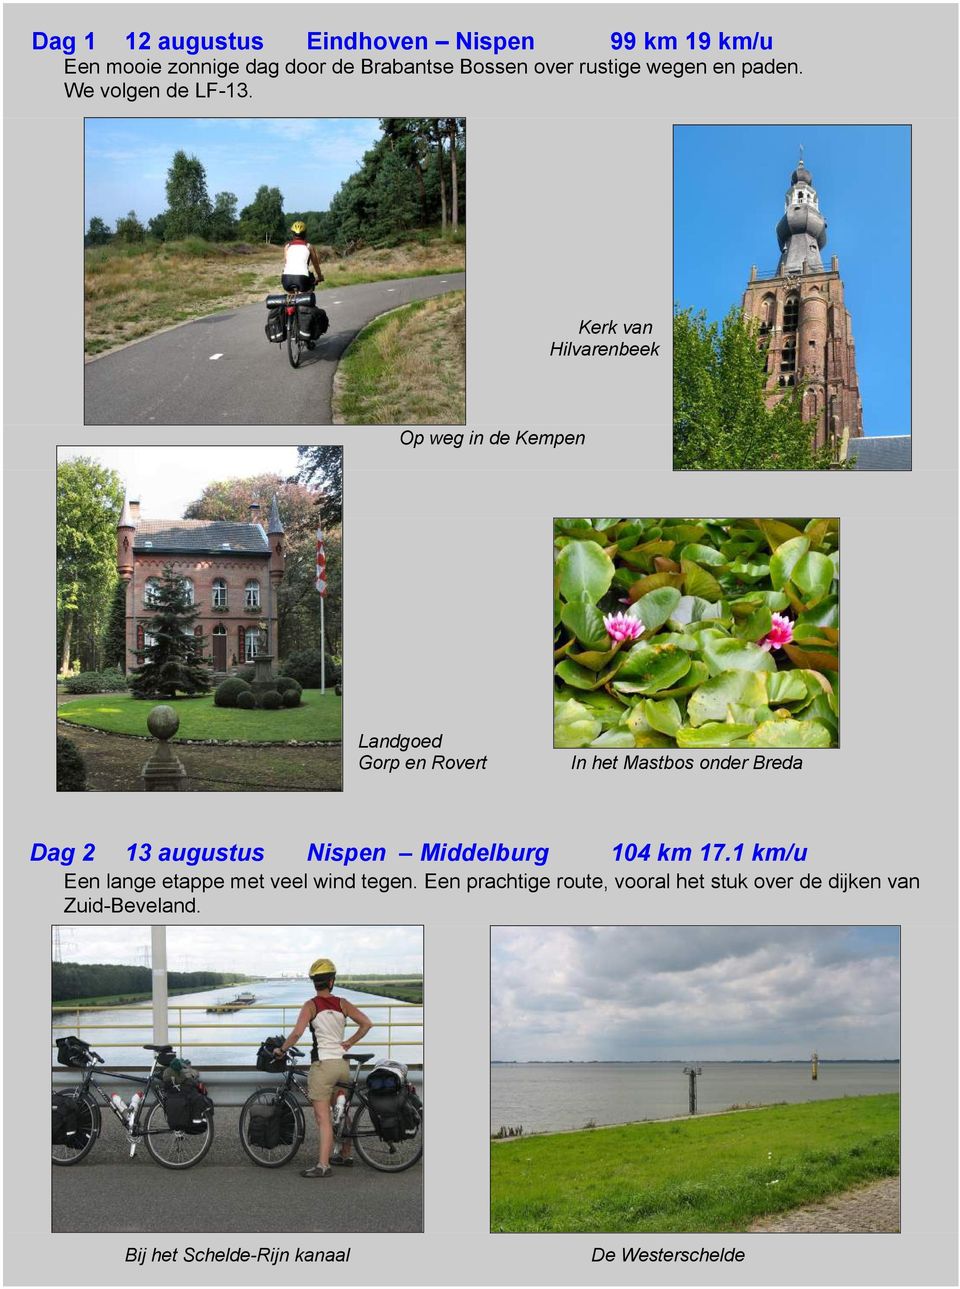 Kerk van Hilvarenbeek Op weg in de Kempen Landgoed Gorp en Rovert In het Mastbos onder Breda Dag 2 13 augustus